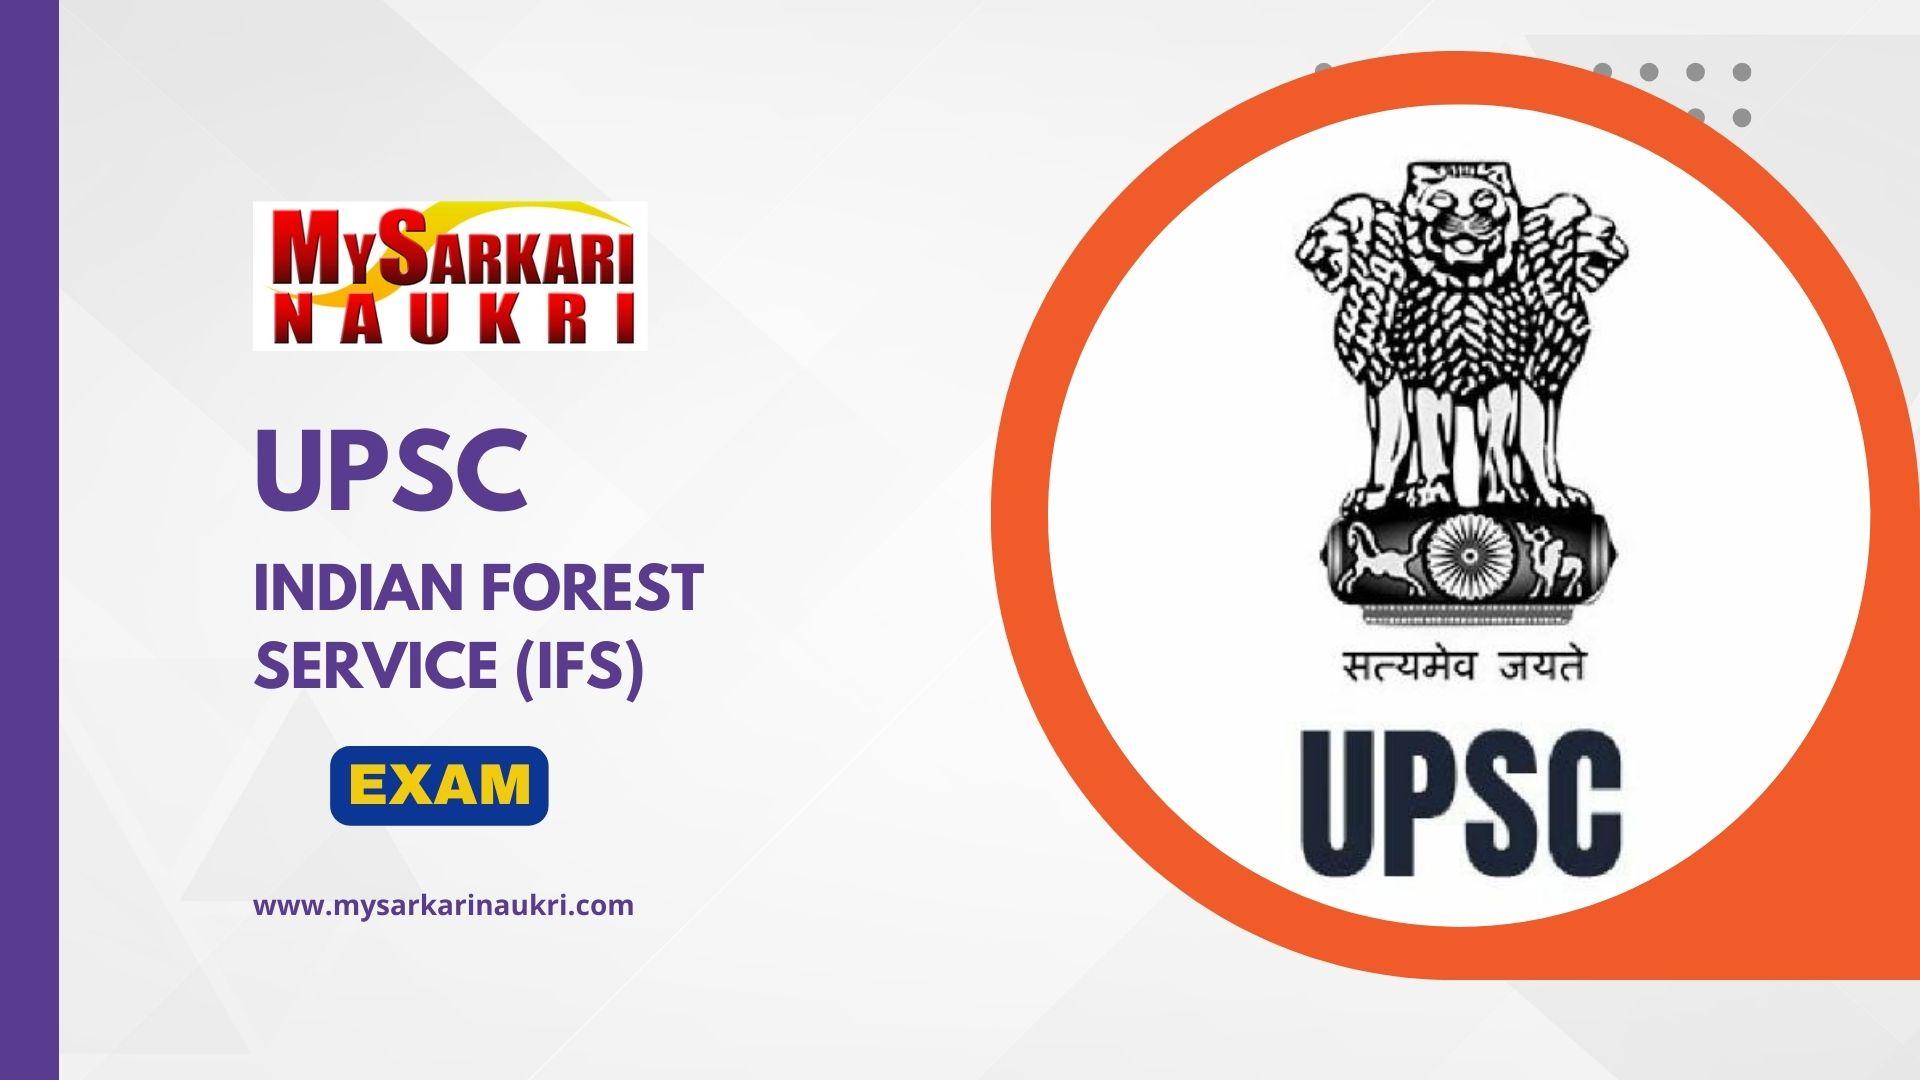 UPSC Logo Wallpapers - Wallpaper Cave